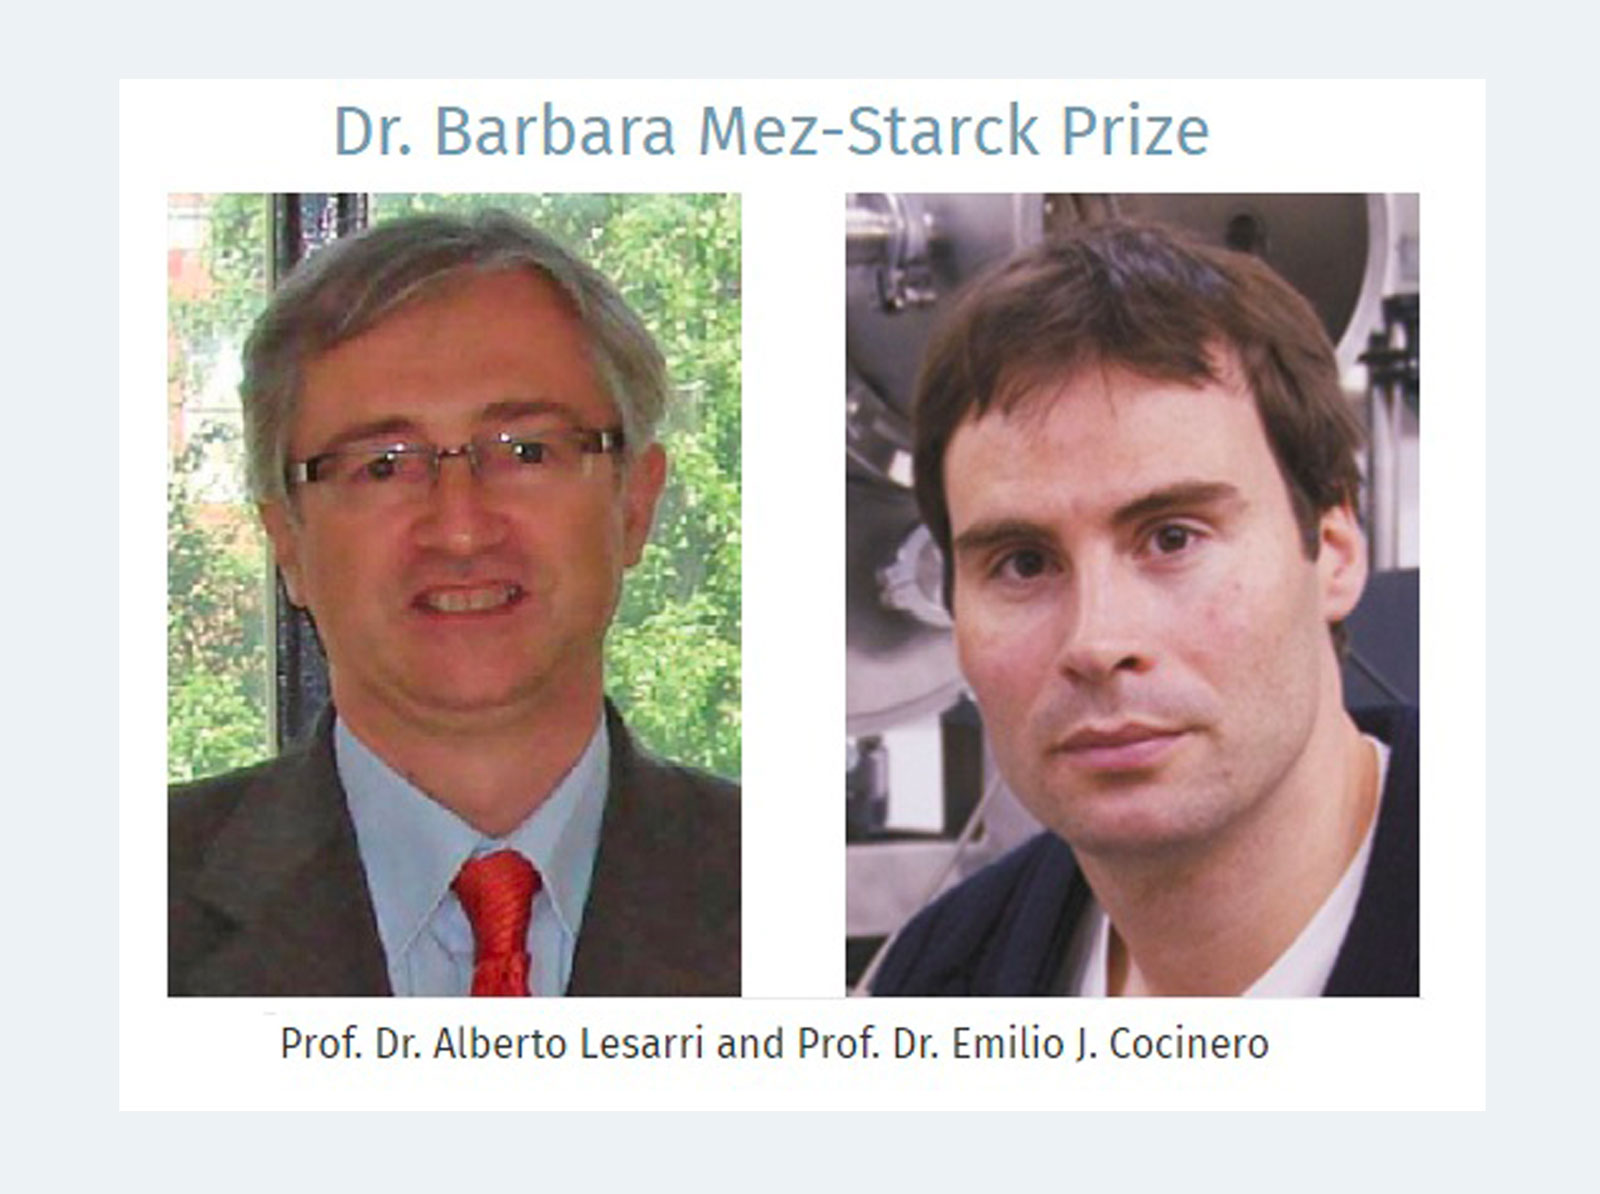 El expresidente del JIQ, Emilio J. Cocinero, premiado con el International Dr. Barbara Mez-Starck Prize